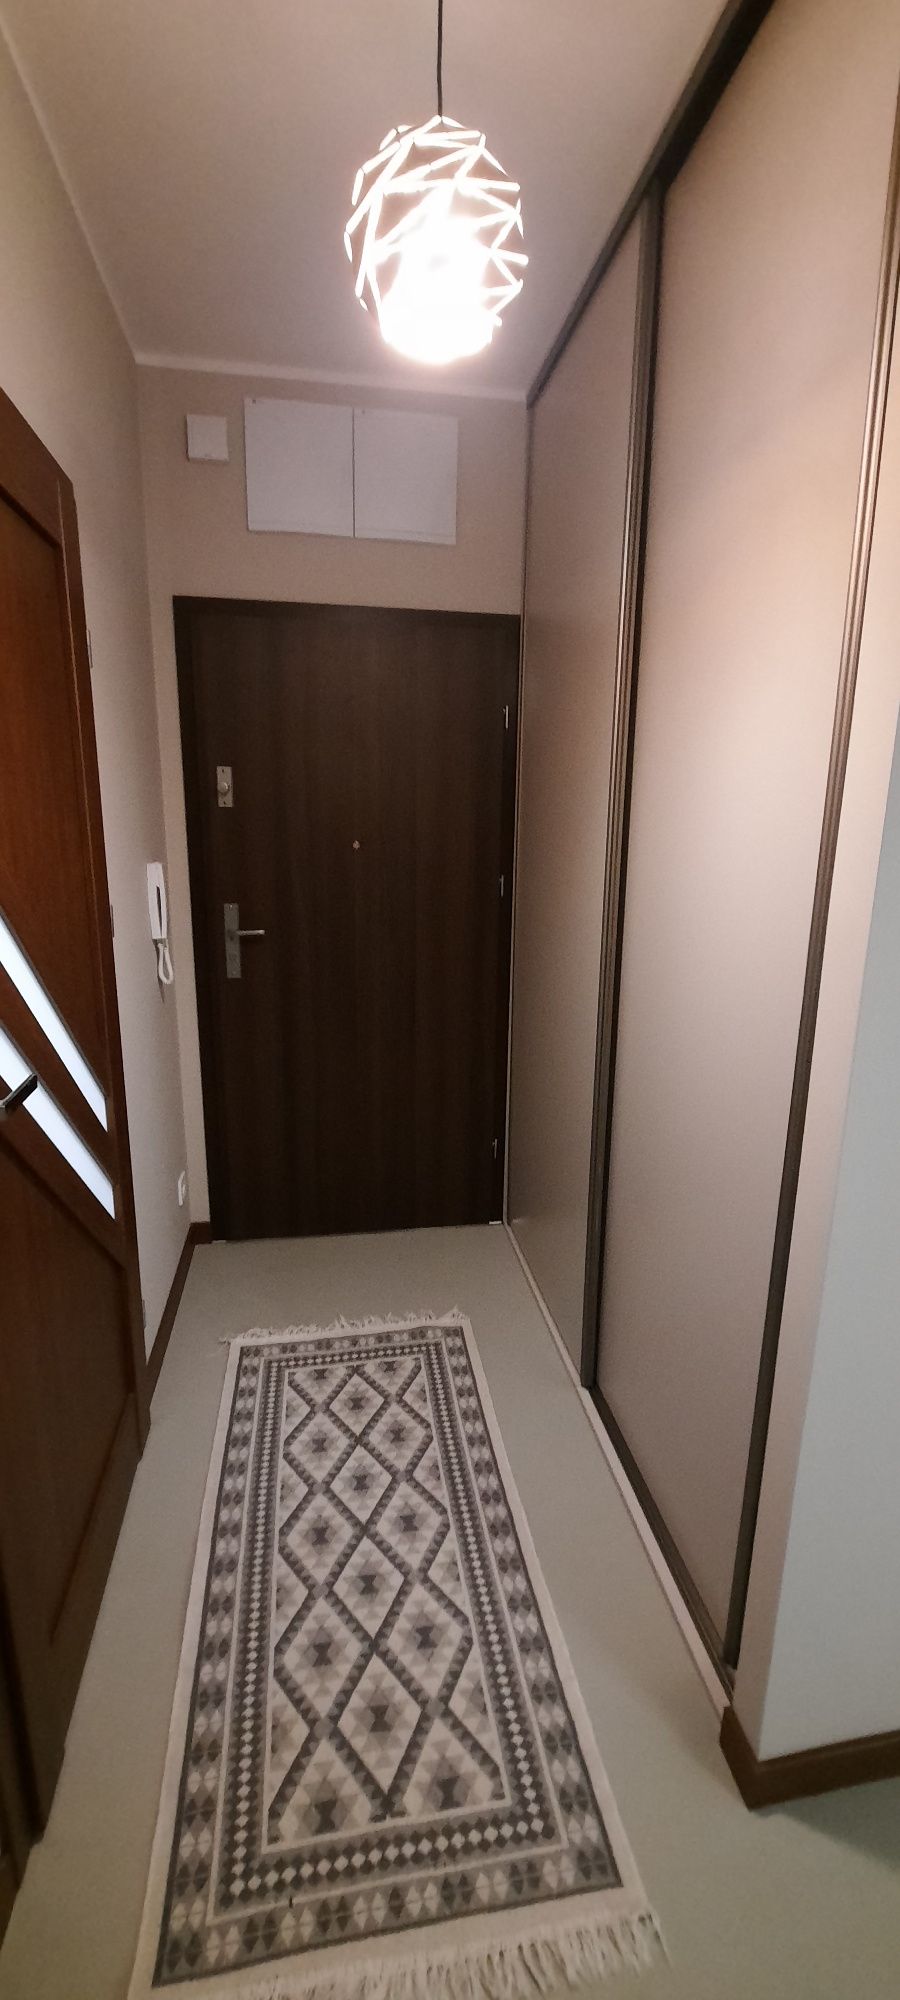 Nowy apartament Parkitka Małopolska 45m2 garaż podziemny, komórka.